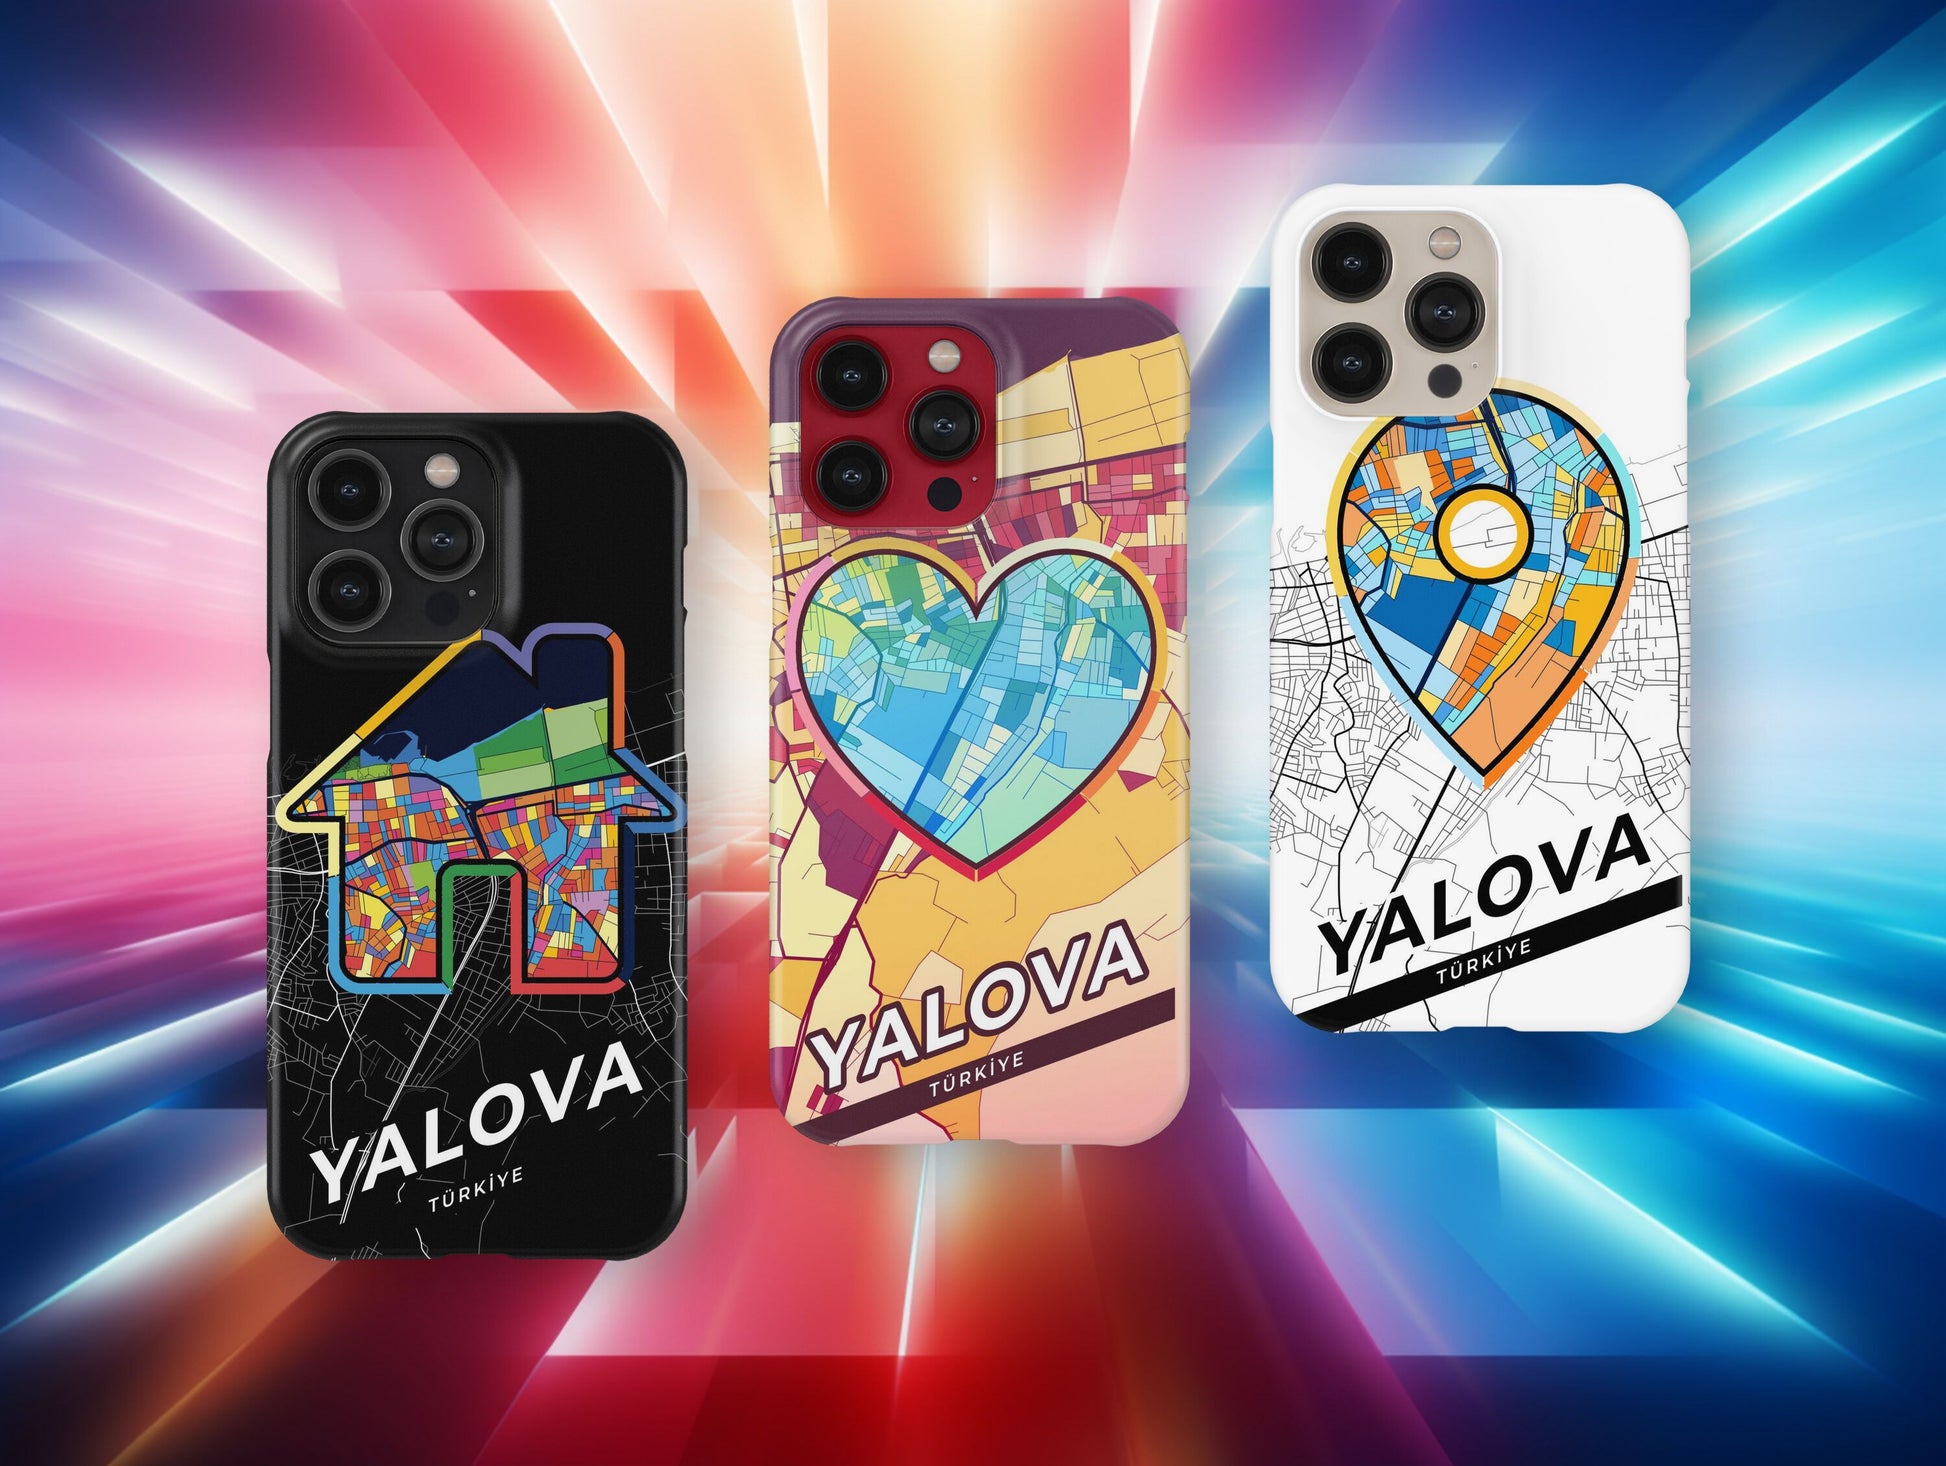 Yalova Turkey slim phone case with colorful icon